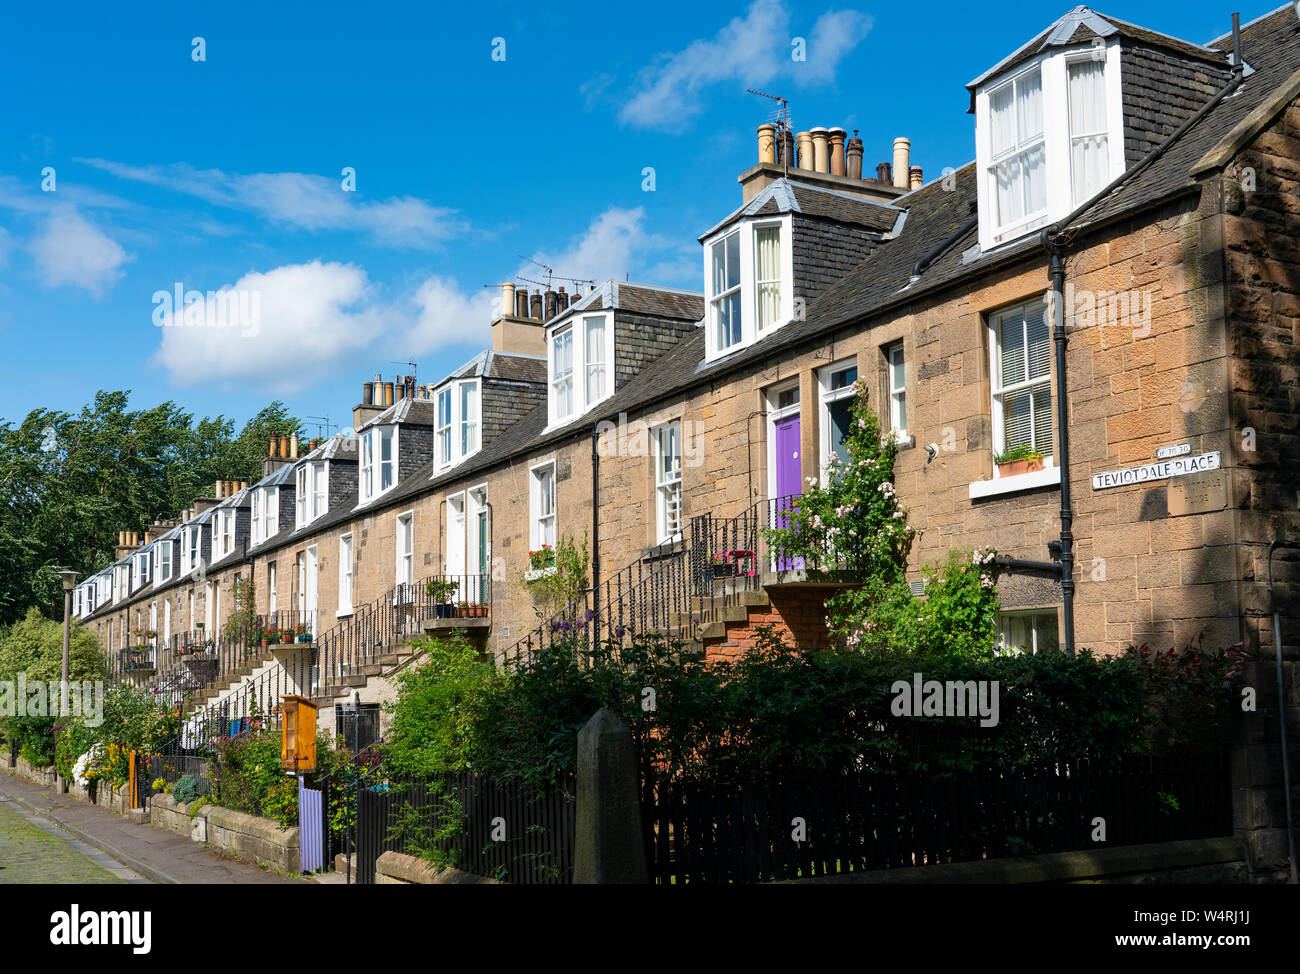 Exterior view of row of Colony style terraced houses in Stockbridge, Edinburgh, Scotland, UK Stock Photo